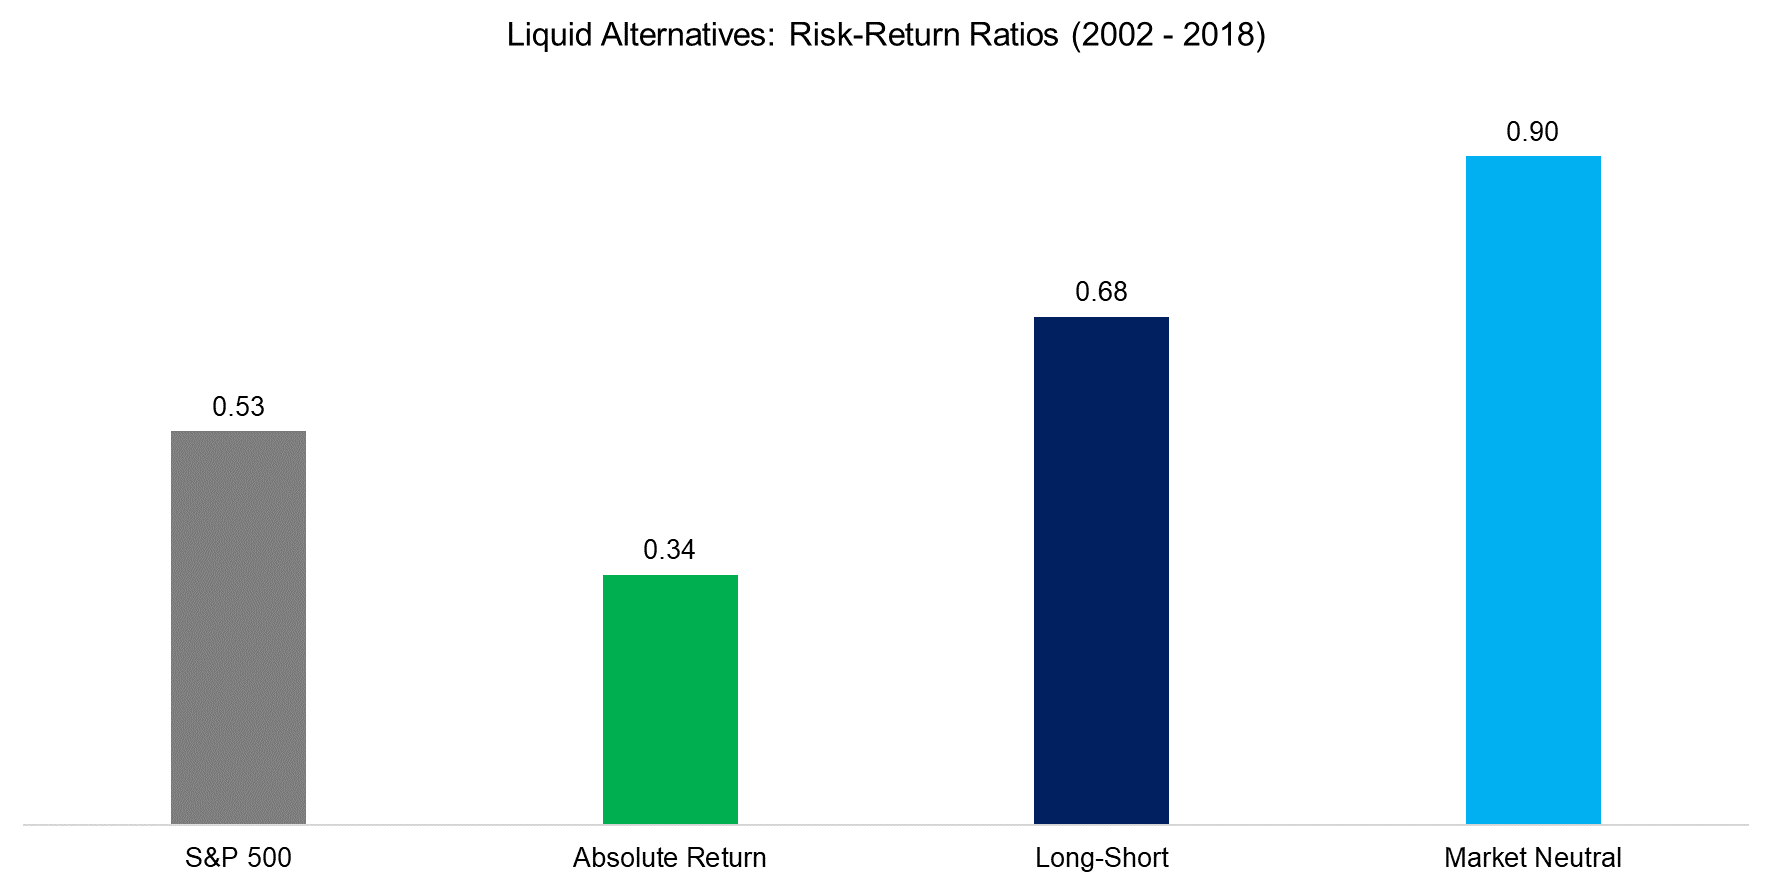 Liquid Alternatives Risk-Return Ratios (2002 - 2018)